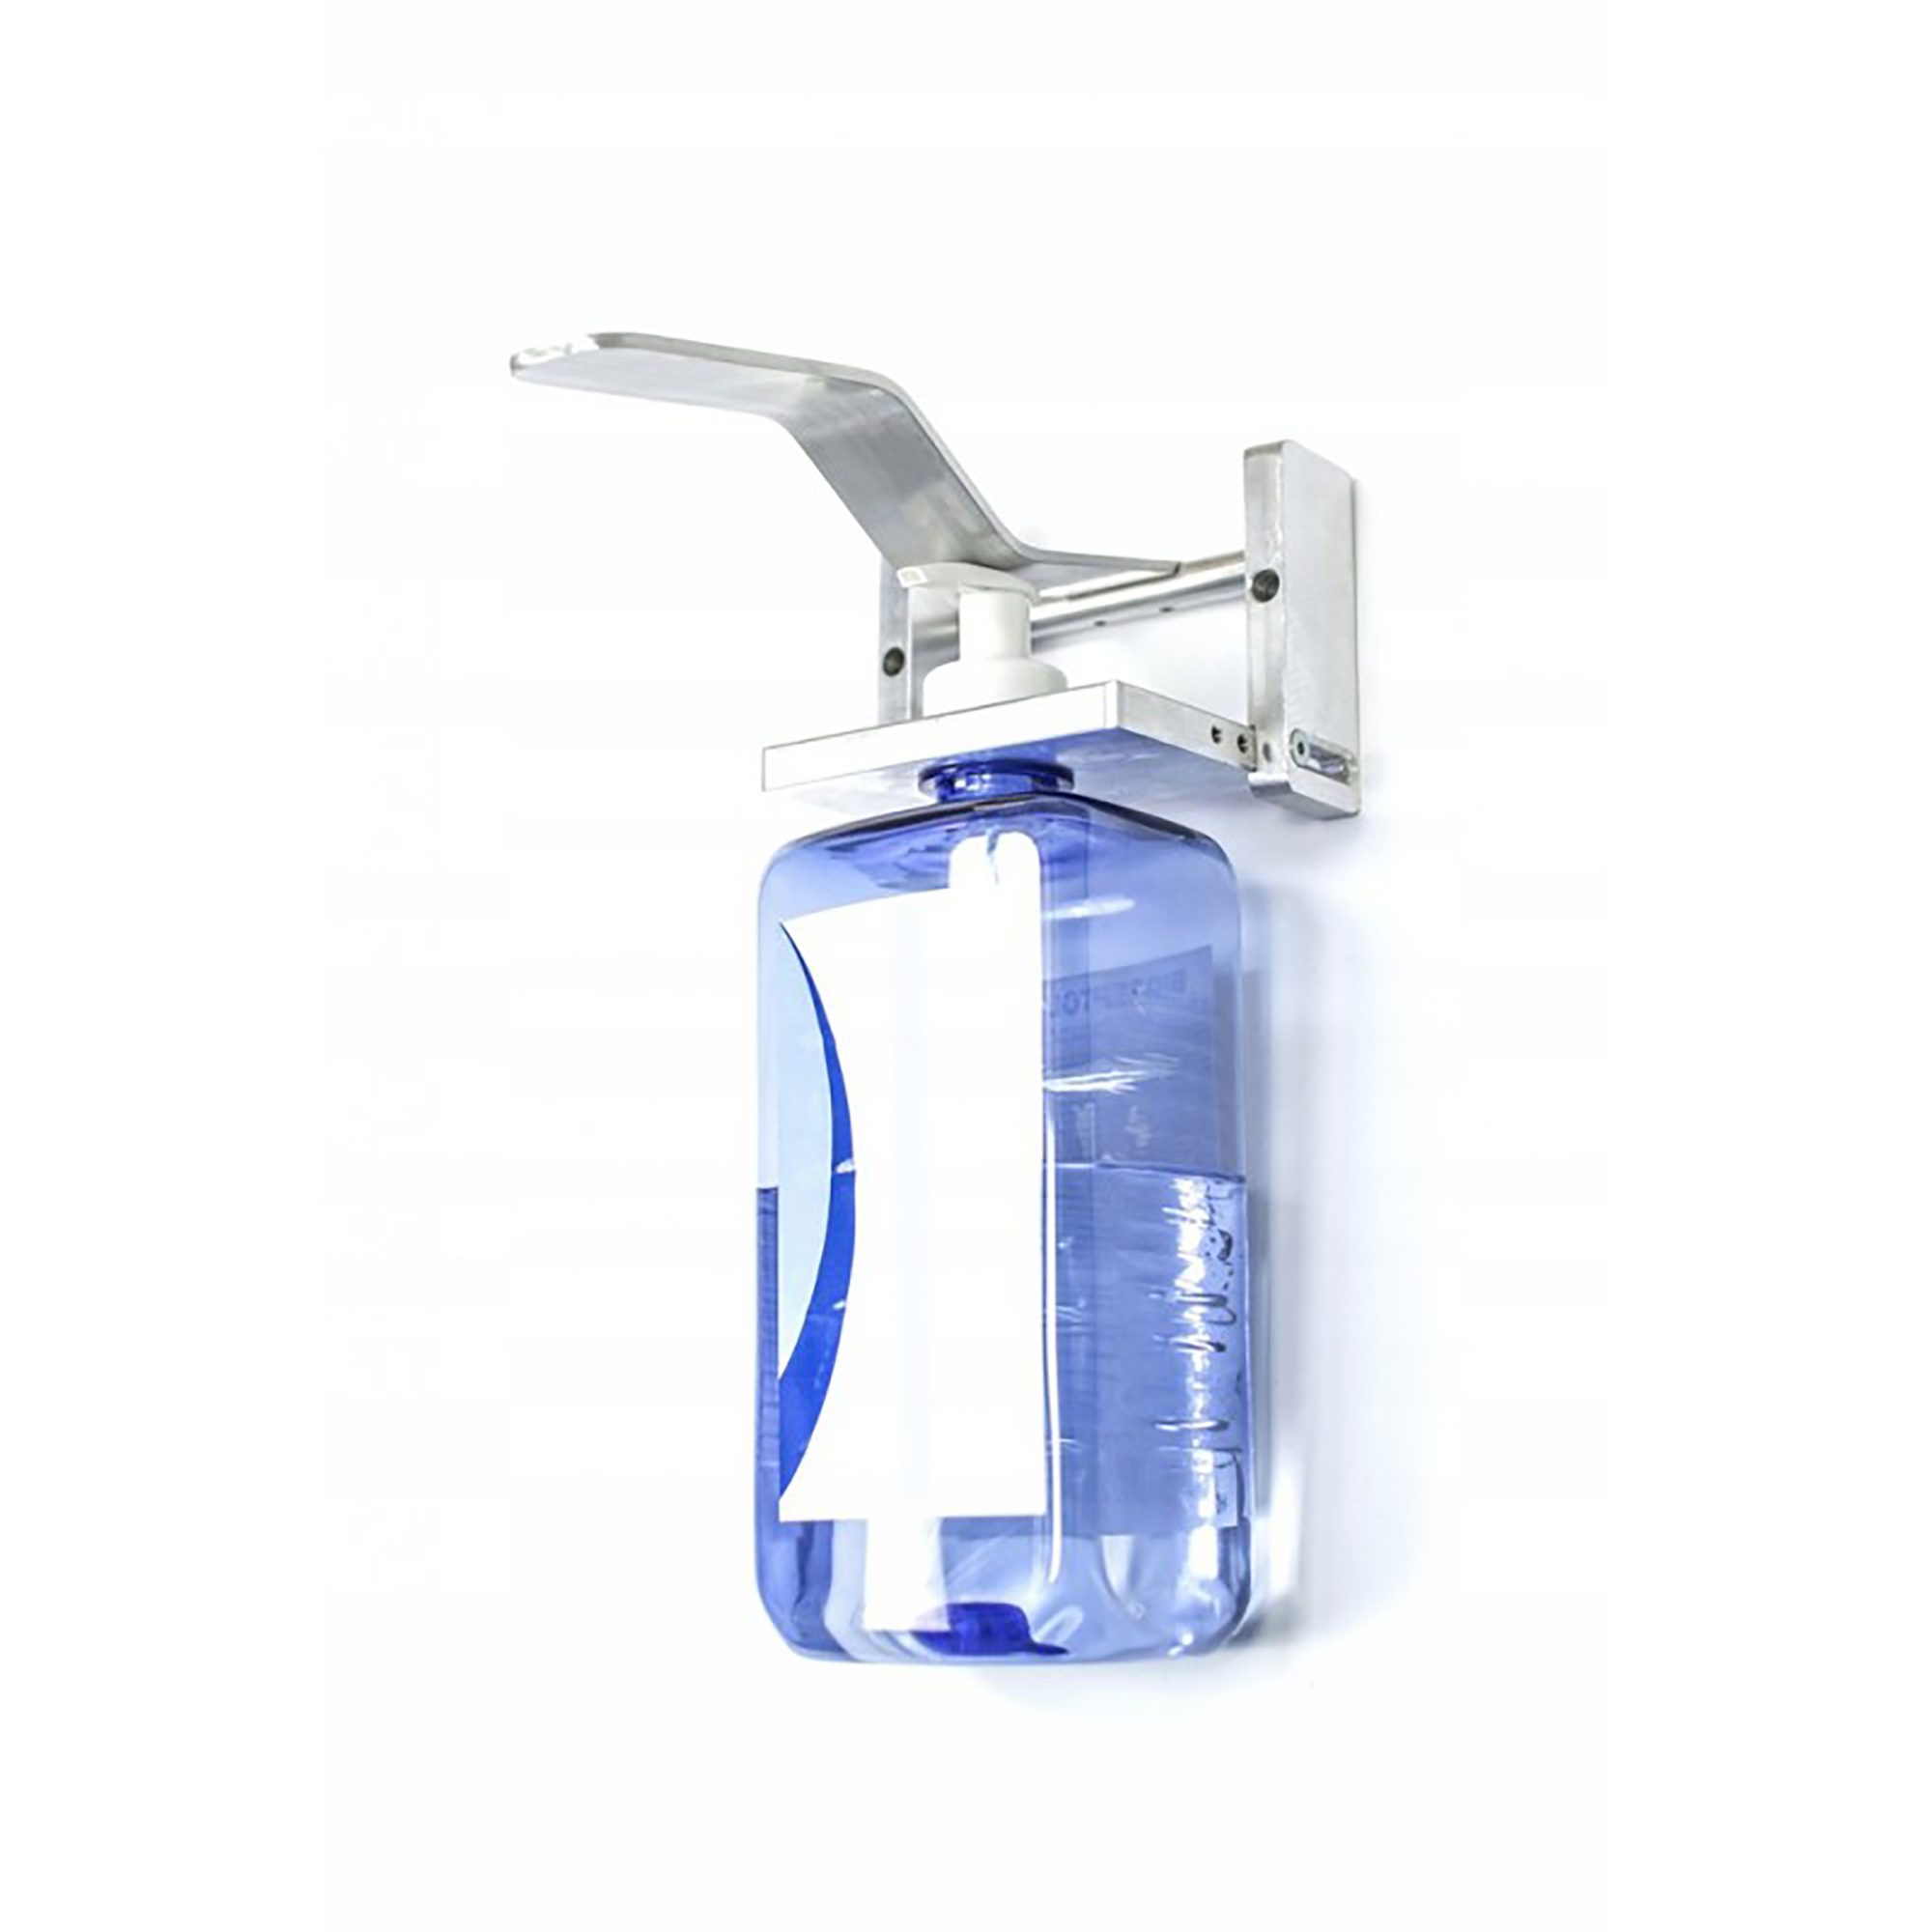 Universal-Winkelspender-Flaschenhalter für Desinfektionsmittel C09/0178